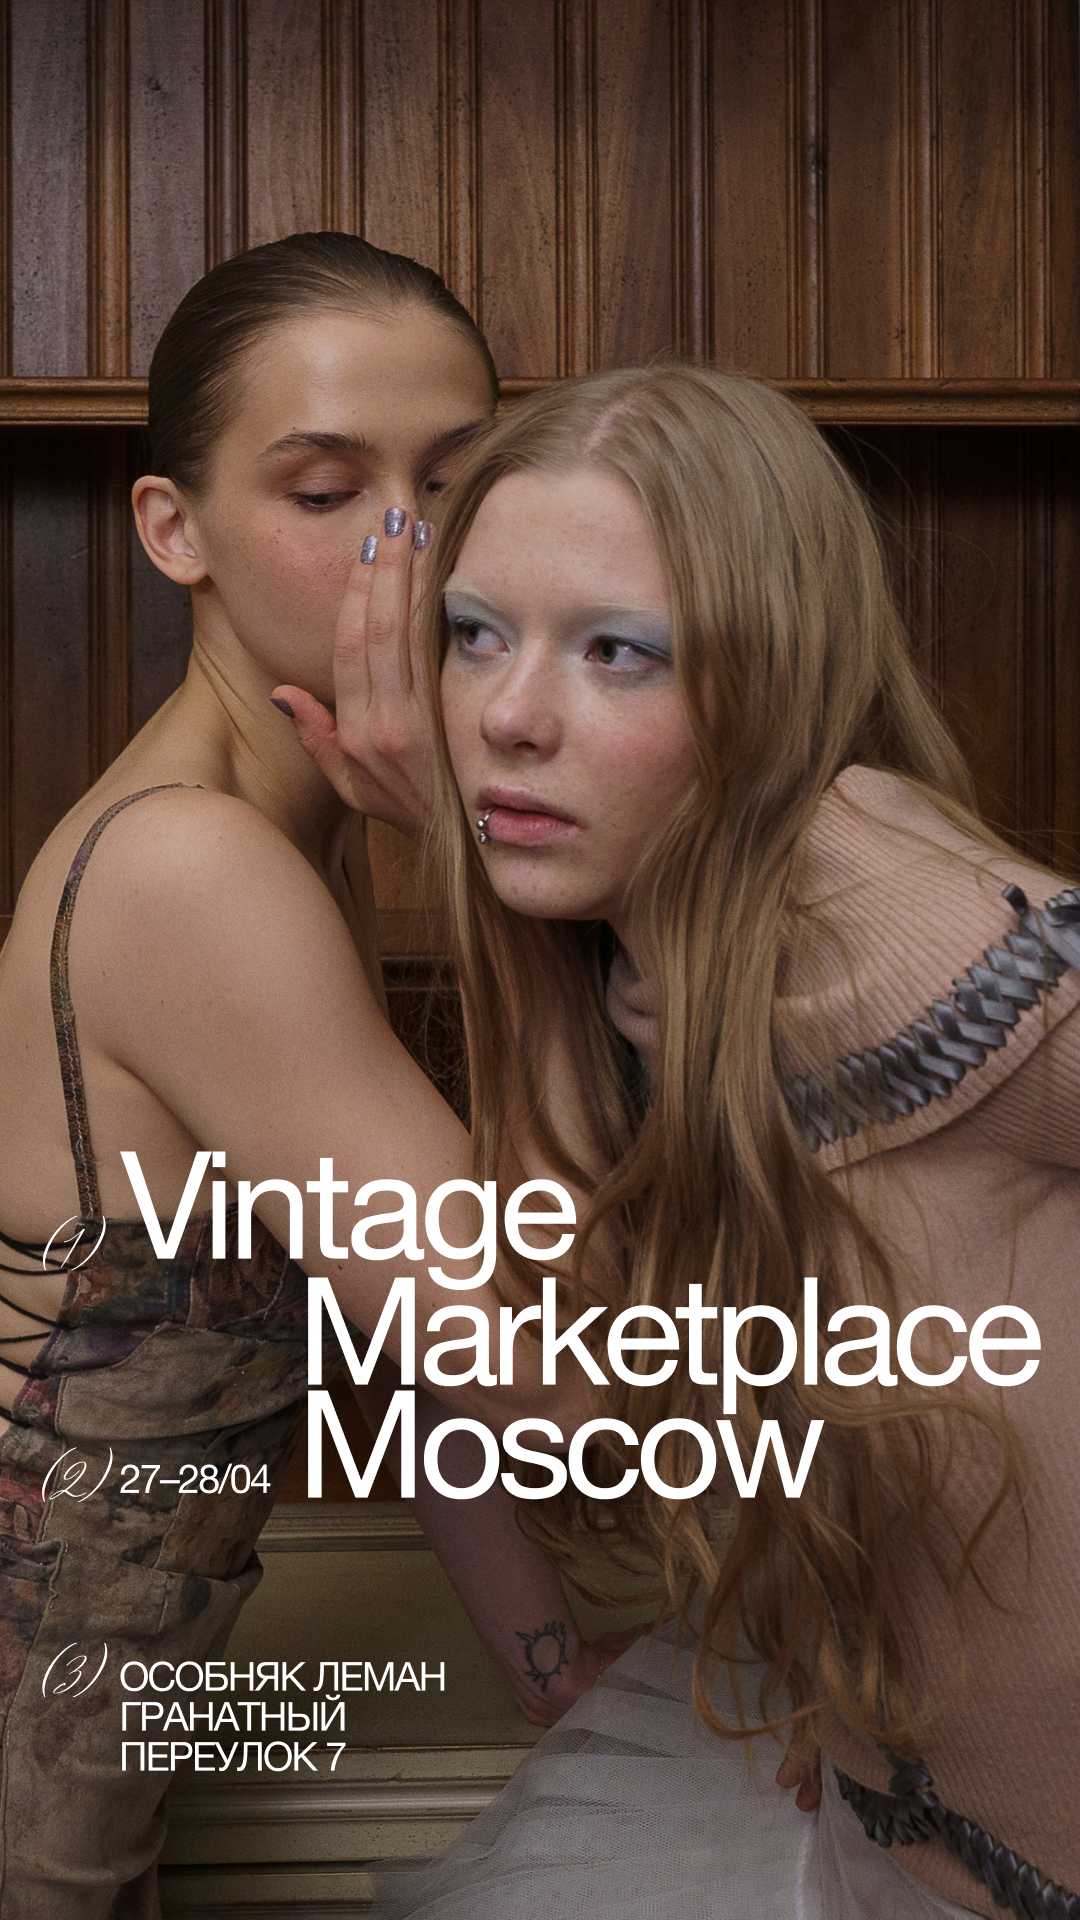 Vintage Marketplace проведет масштабный маркет в особняке Леман (фото 19)